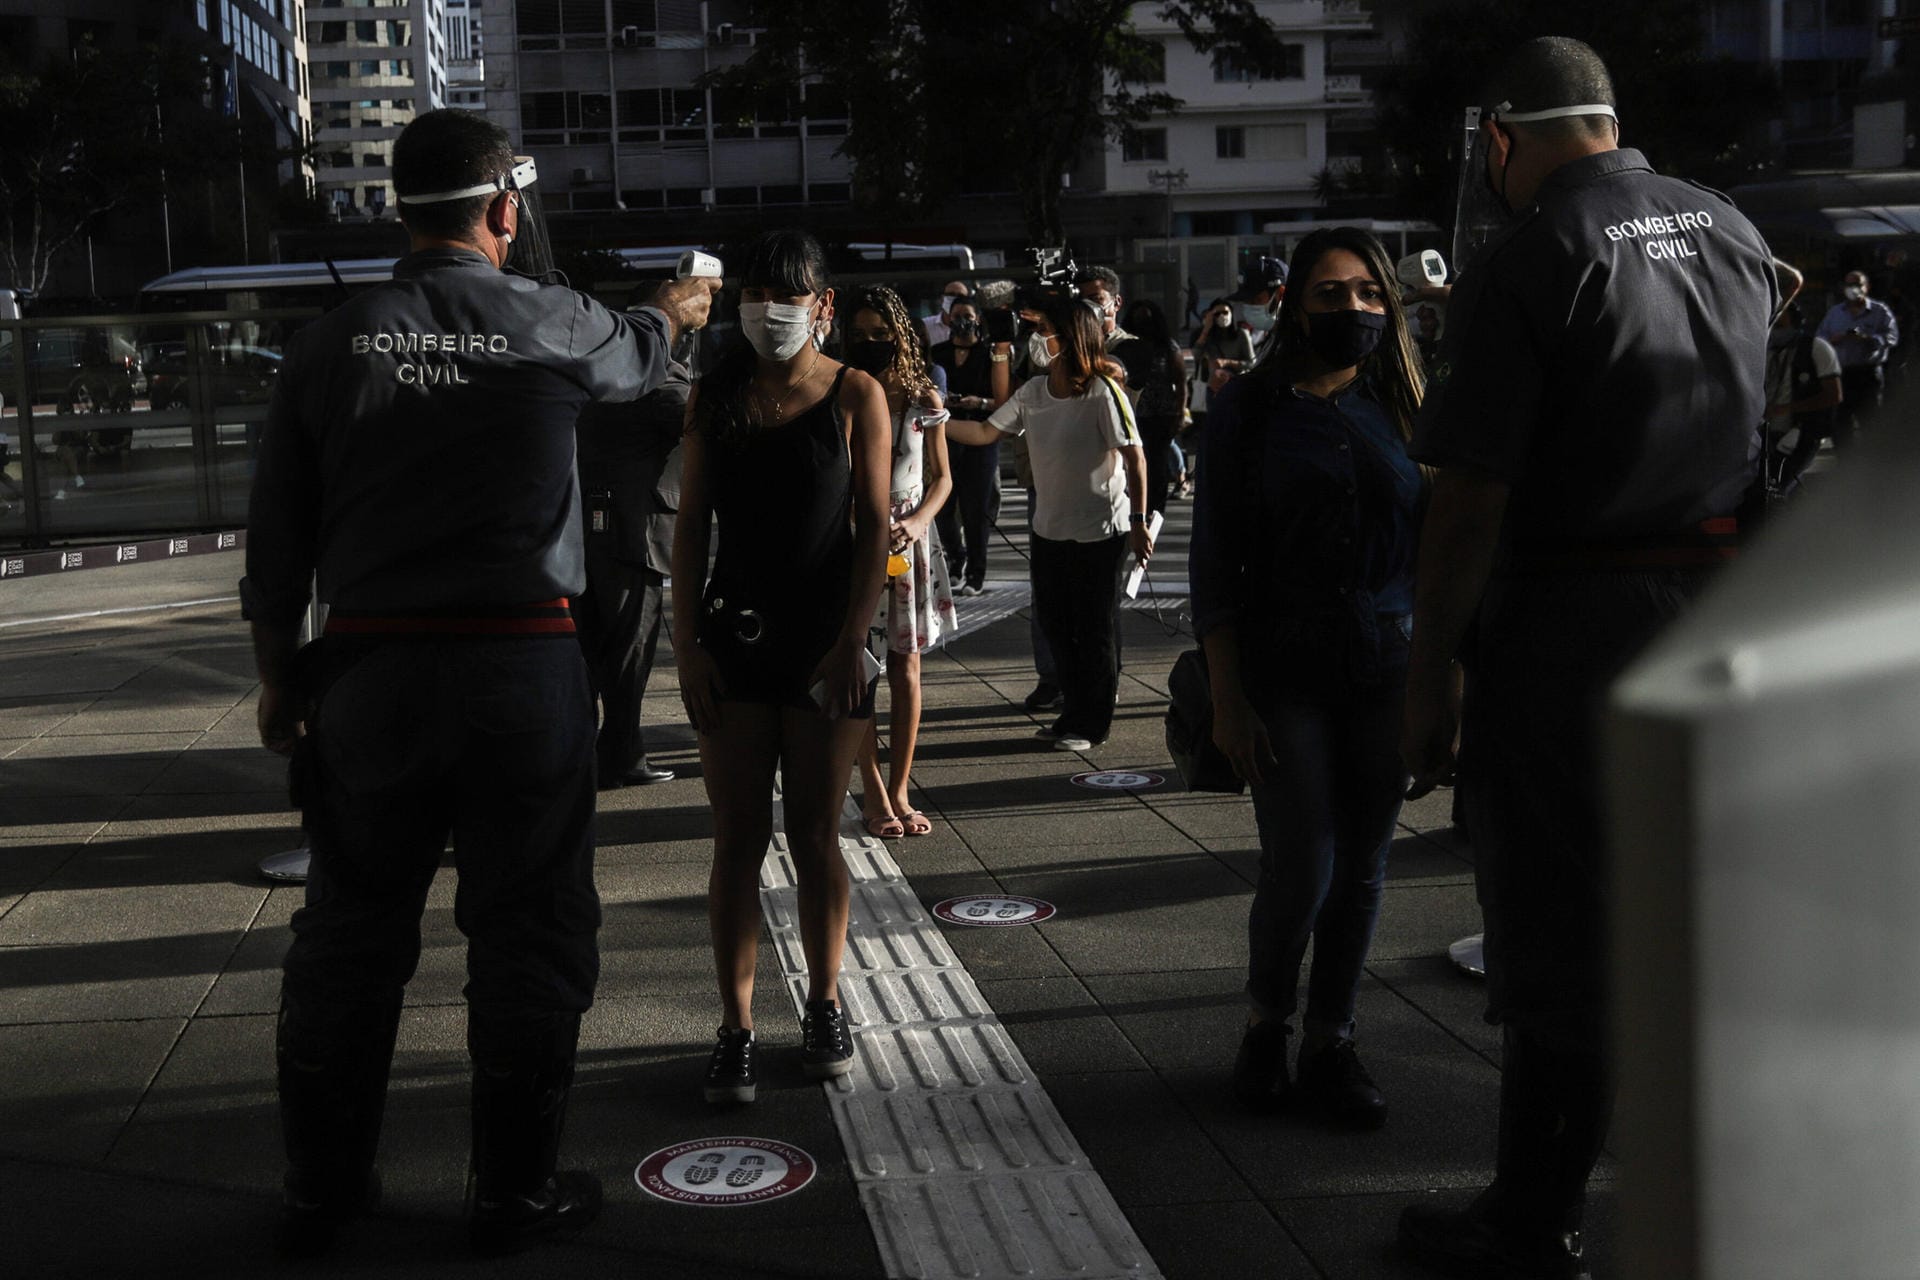 Temperaturmessung vor einer Shopping Mall in Sao Paulo: In keinem Land steigen die Corona-Infektionen in absoluten Zahlen derzeit stärker als in Brasilien. Mit rund 1,6 Millionen Infizierten liegt das Land weltweit auf dem zweiten Platz. Über 65.000 Menschen sind inzwischen verstorben.